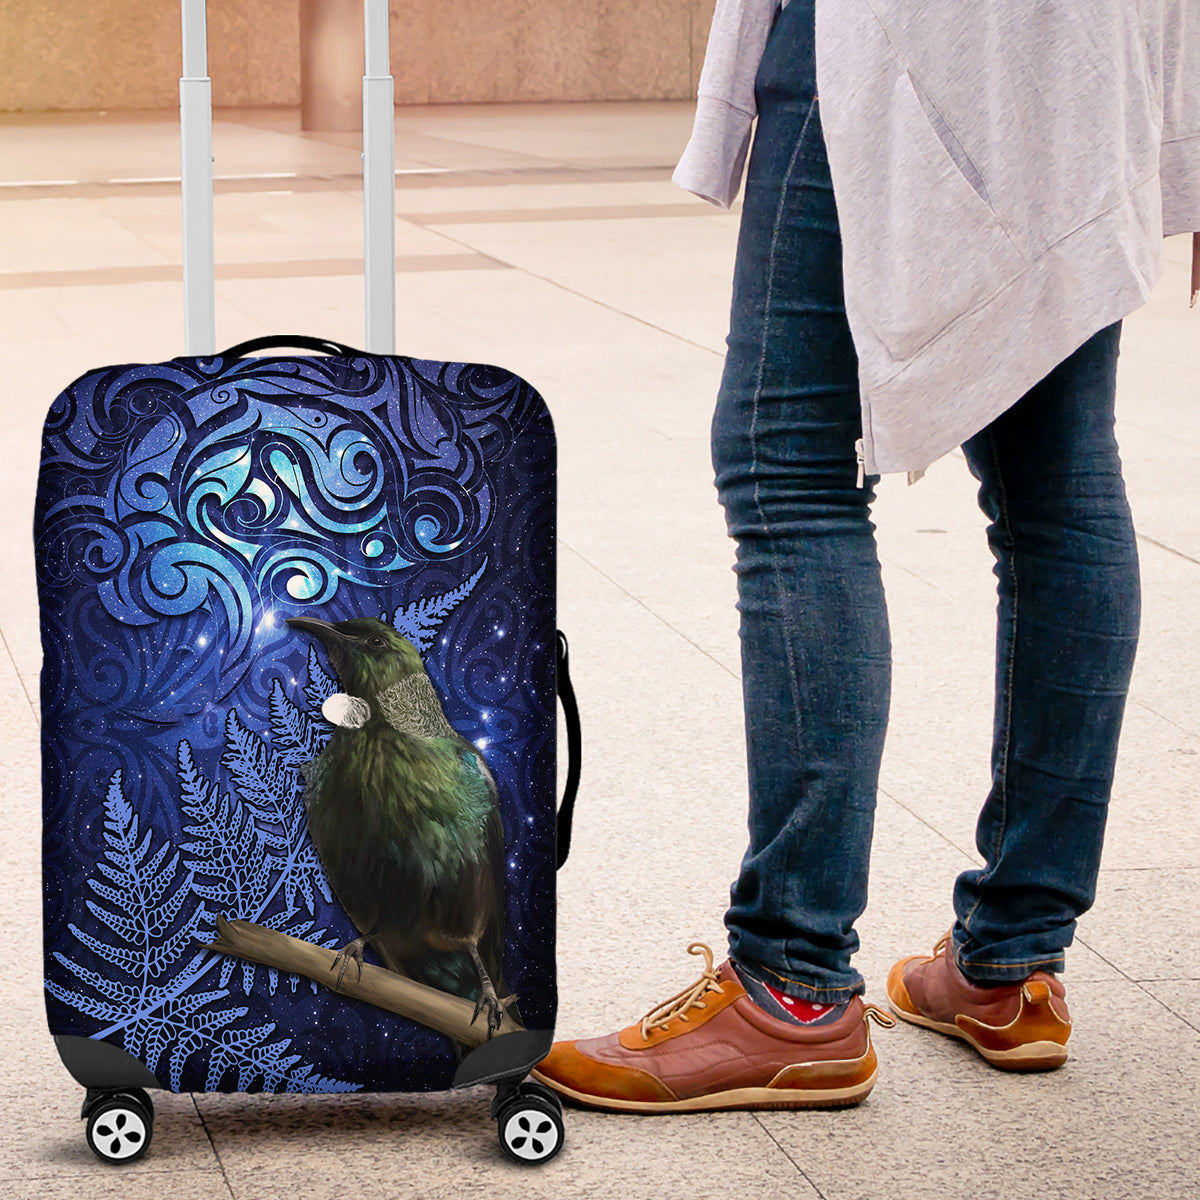 New Zealand Tui Bird Matariki Luggage Cover Maori New Year with Galaxy Fern